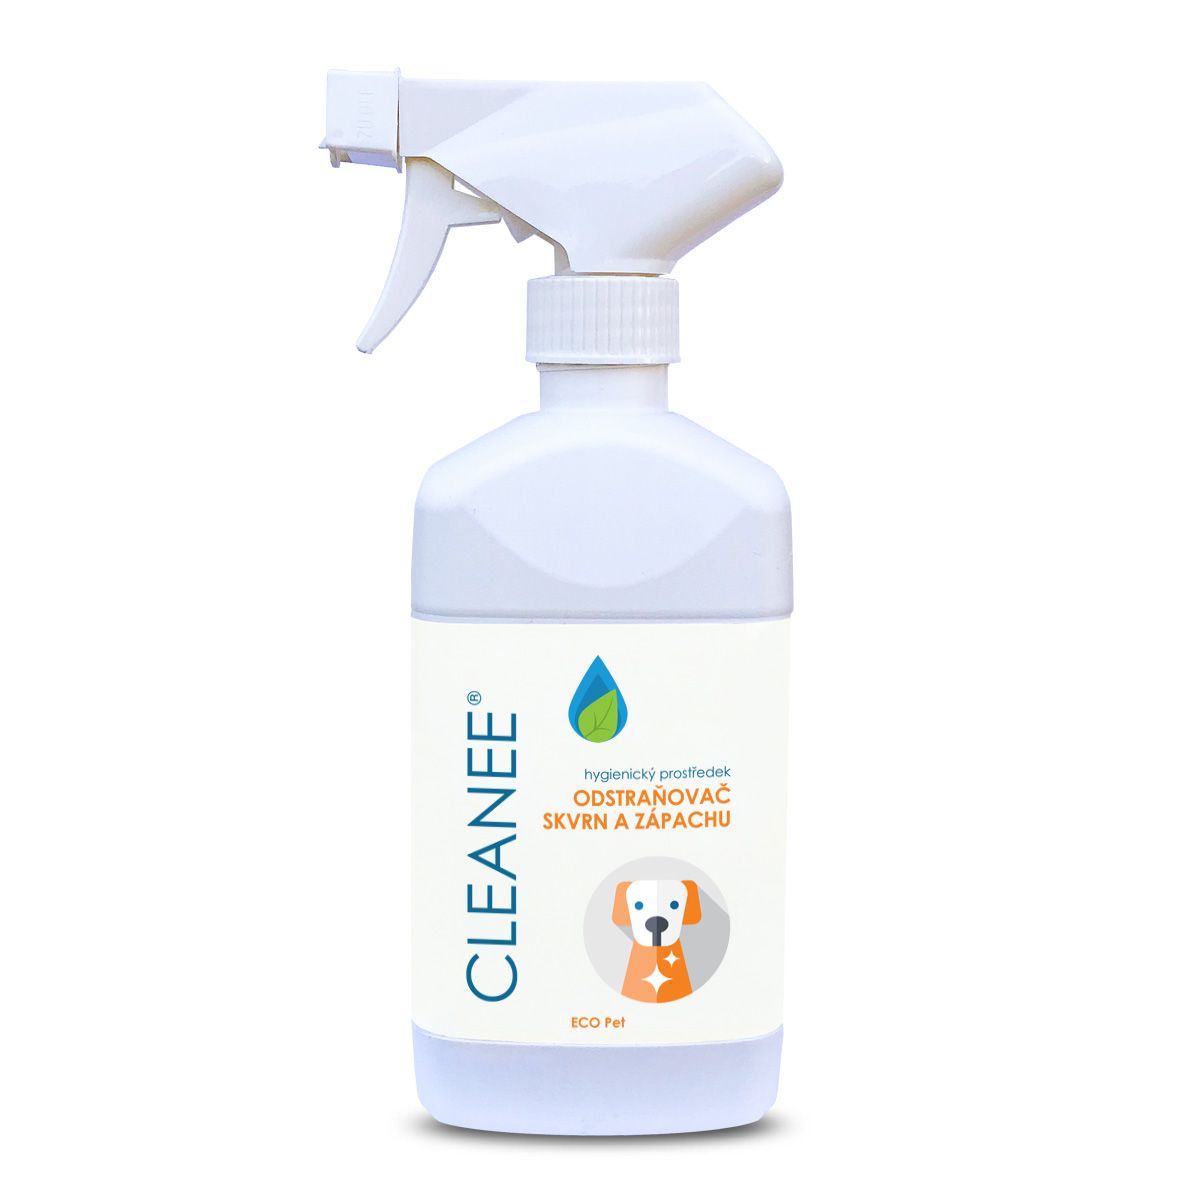 CLEANEE ECO Pet Hygienický odstraňovač skvrn a zápachu 500 ml CLEANEE